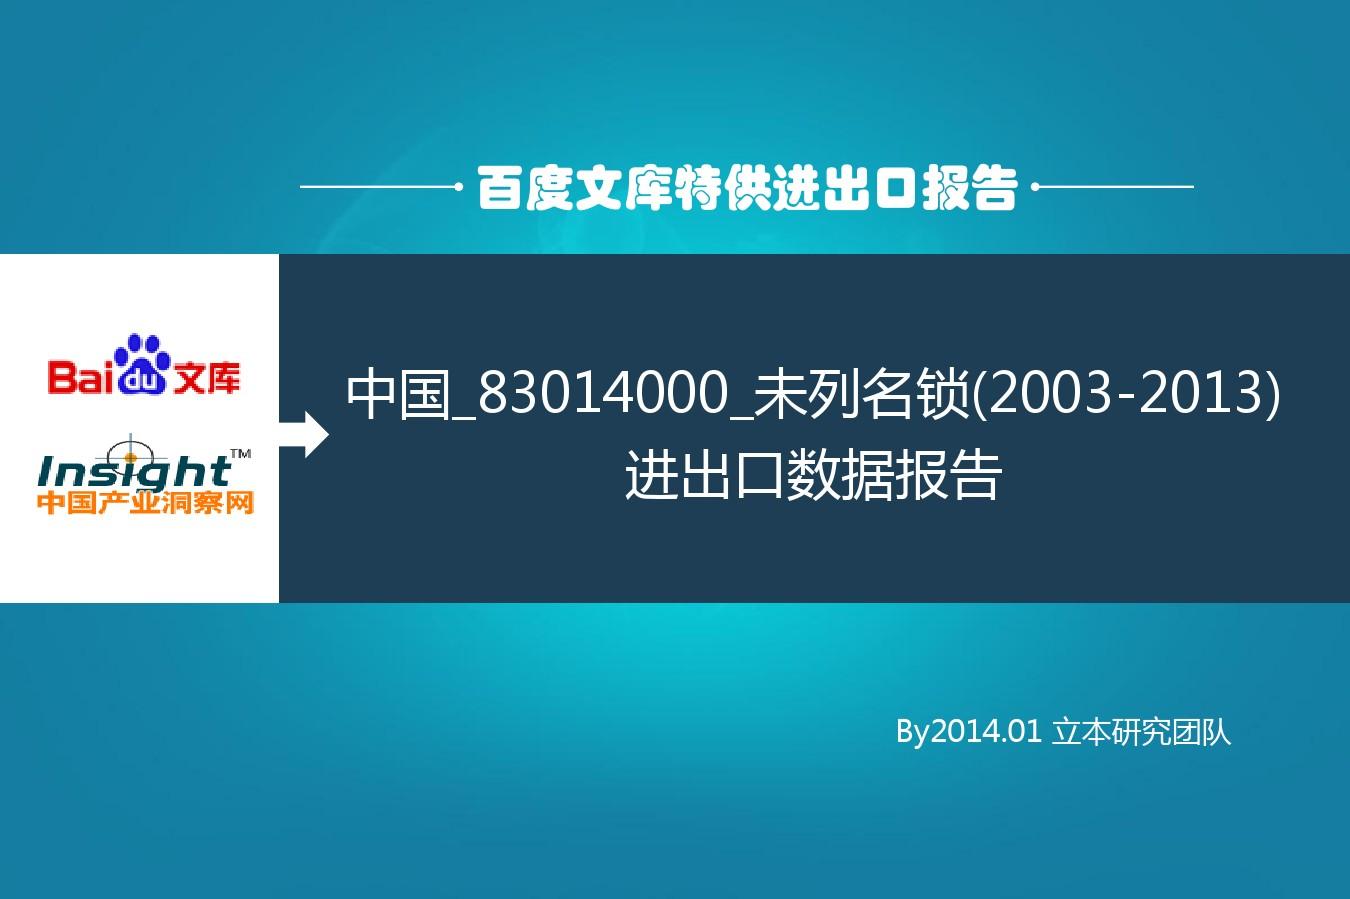 中国_83014000_未列名锁(2003-2013)进出口数据报告